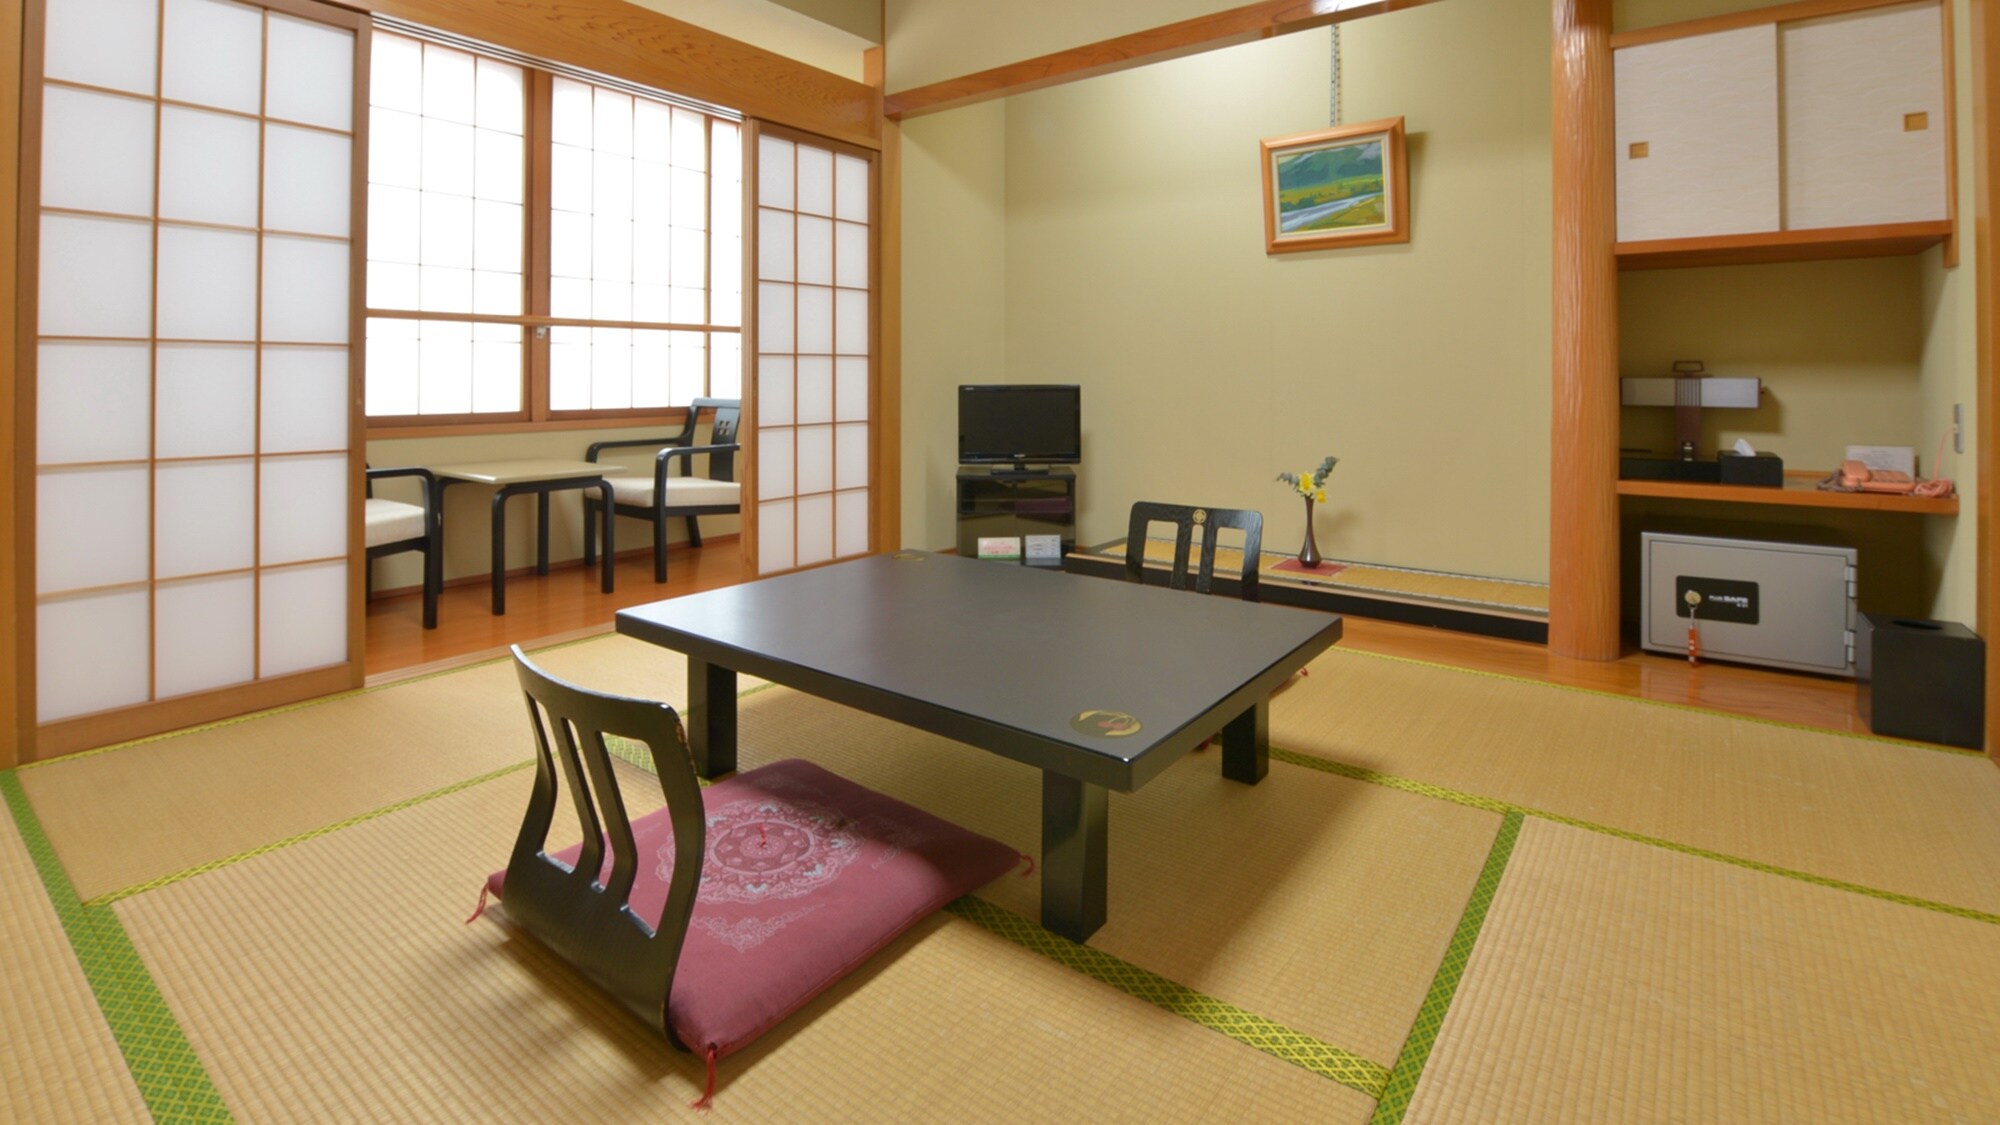 * [8张榻榻米的日式房间示例]一个平静的日式房间，可以治愈旅行的疲劳。